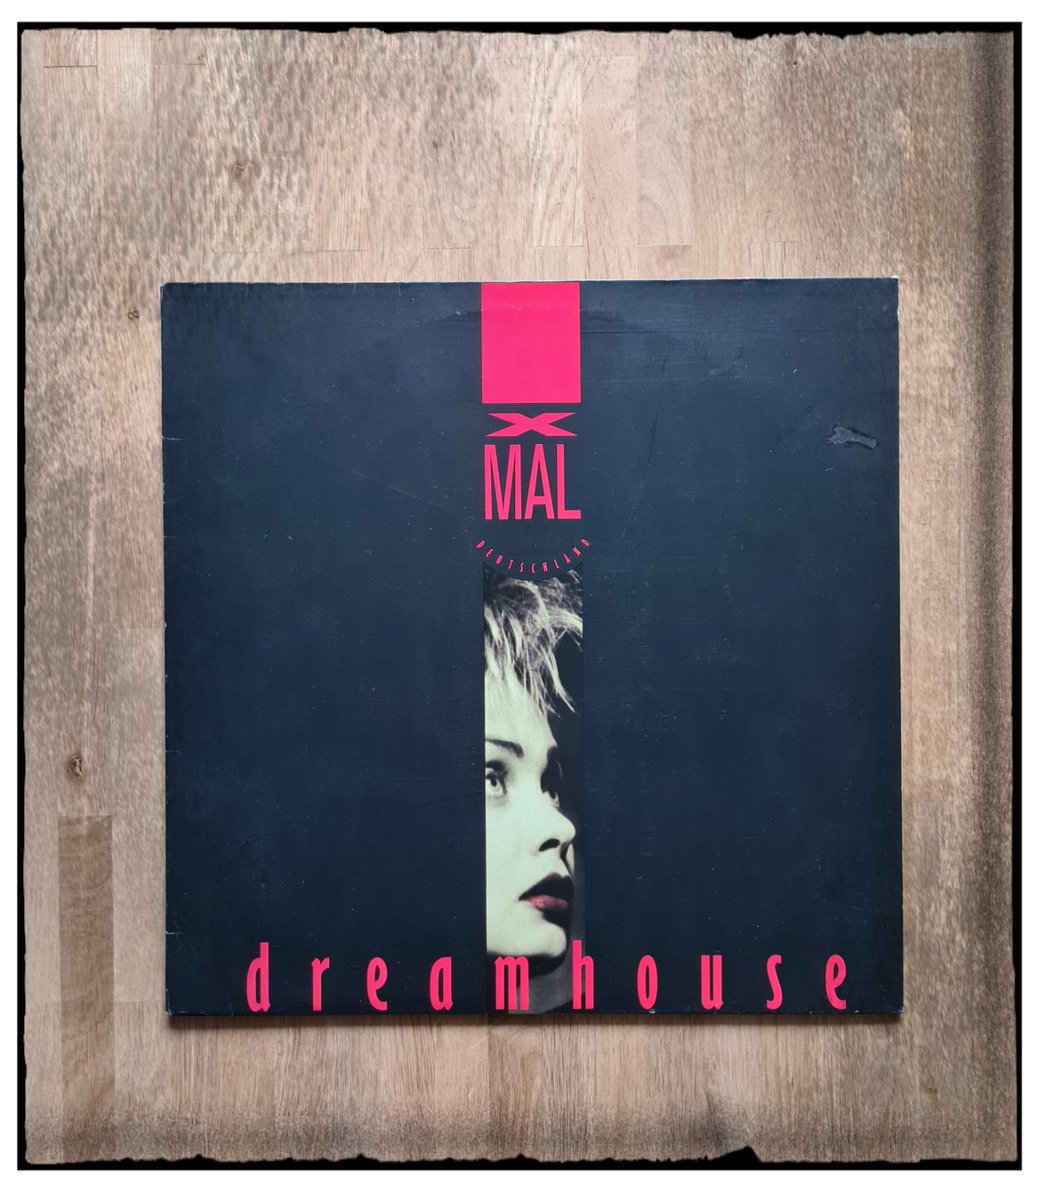 XMAL  DEUTSCHLAND  🖤🎤🖤🎤
   ~  Dreamhouse  ~
#newwave  #AnjaHuwe 
#XmalDeutschland